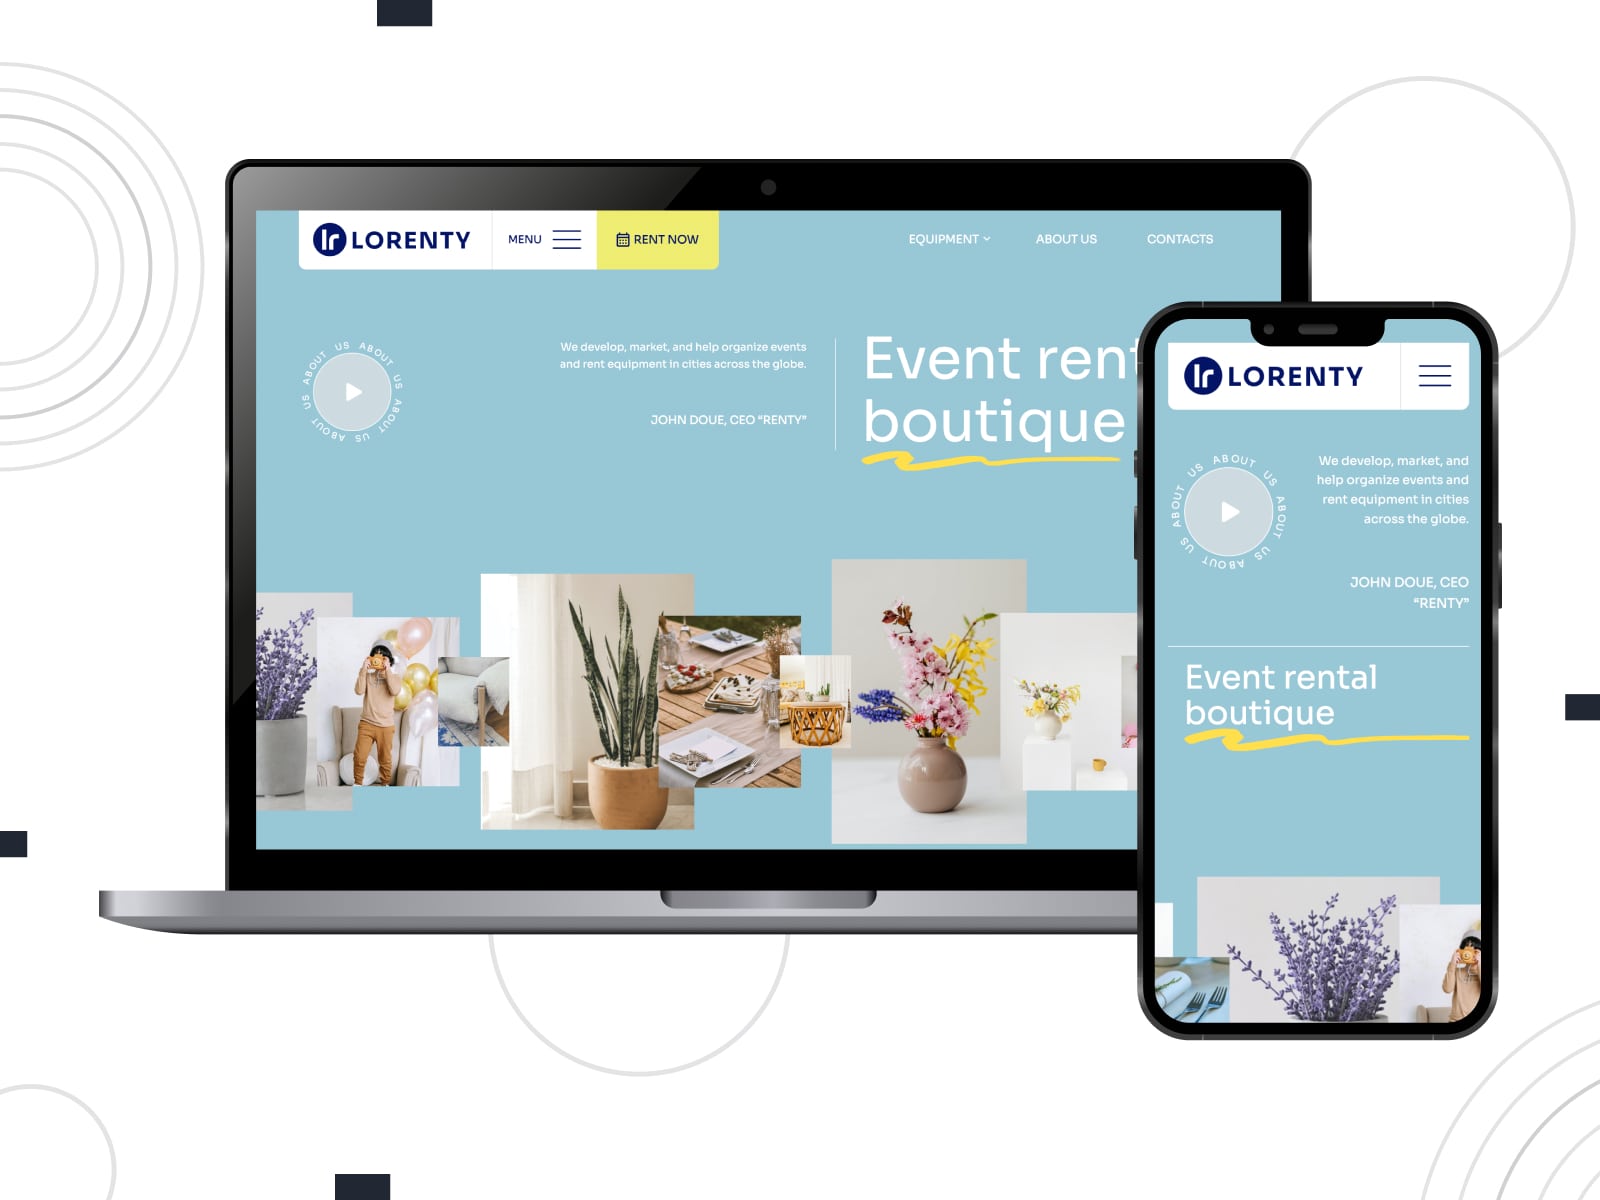 Collage du modèle de site Web de location de soirée Lorenty pour les sites Web WordPress en couleurs bleu, jaune et gris.